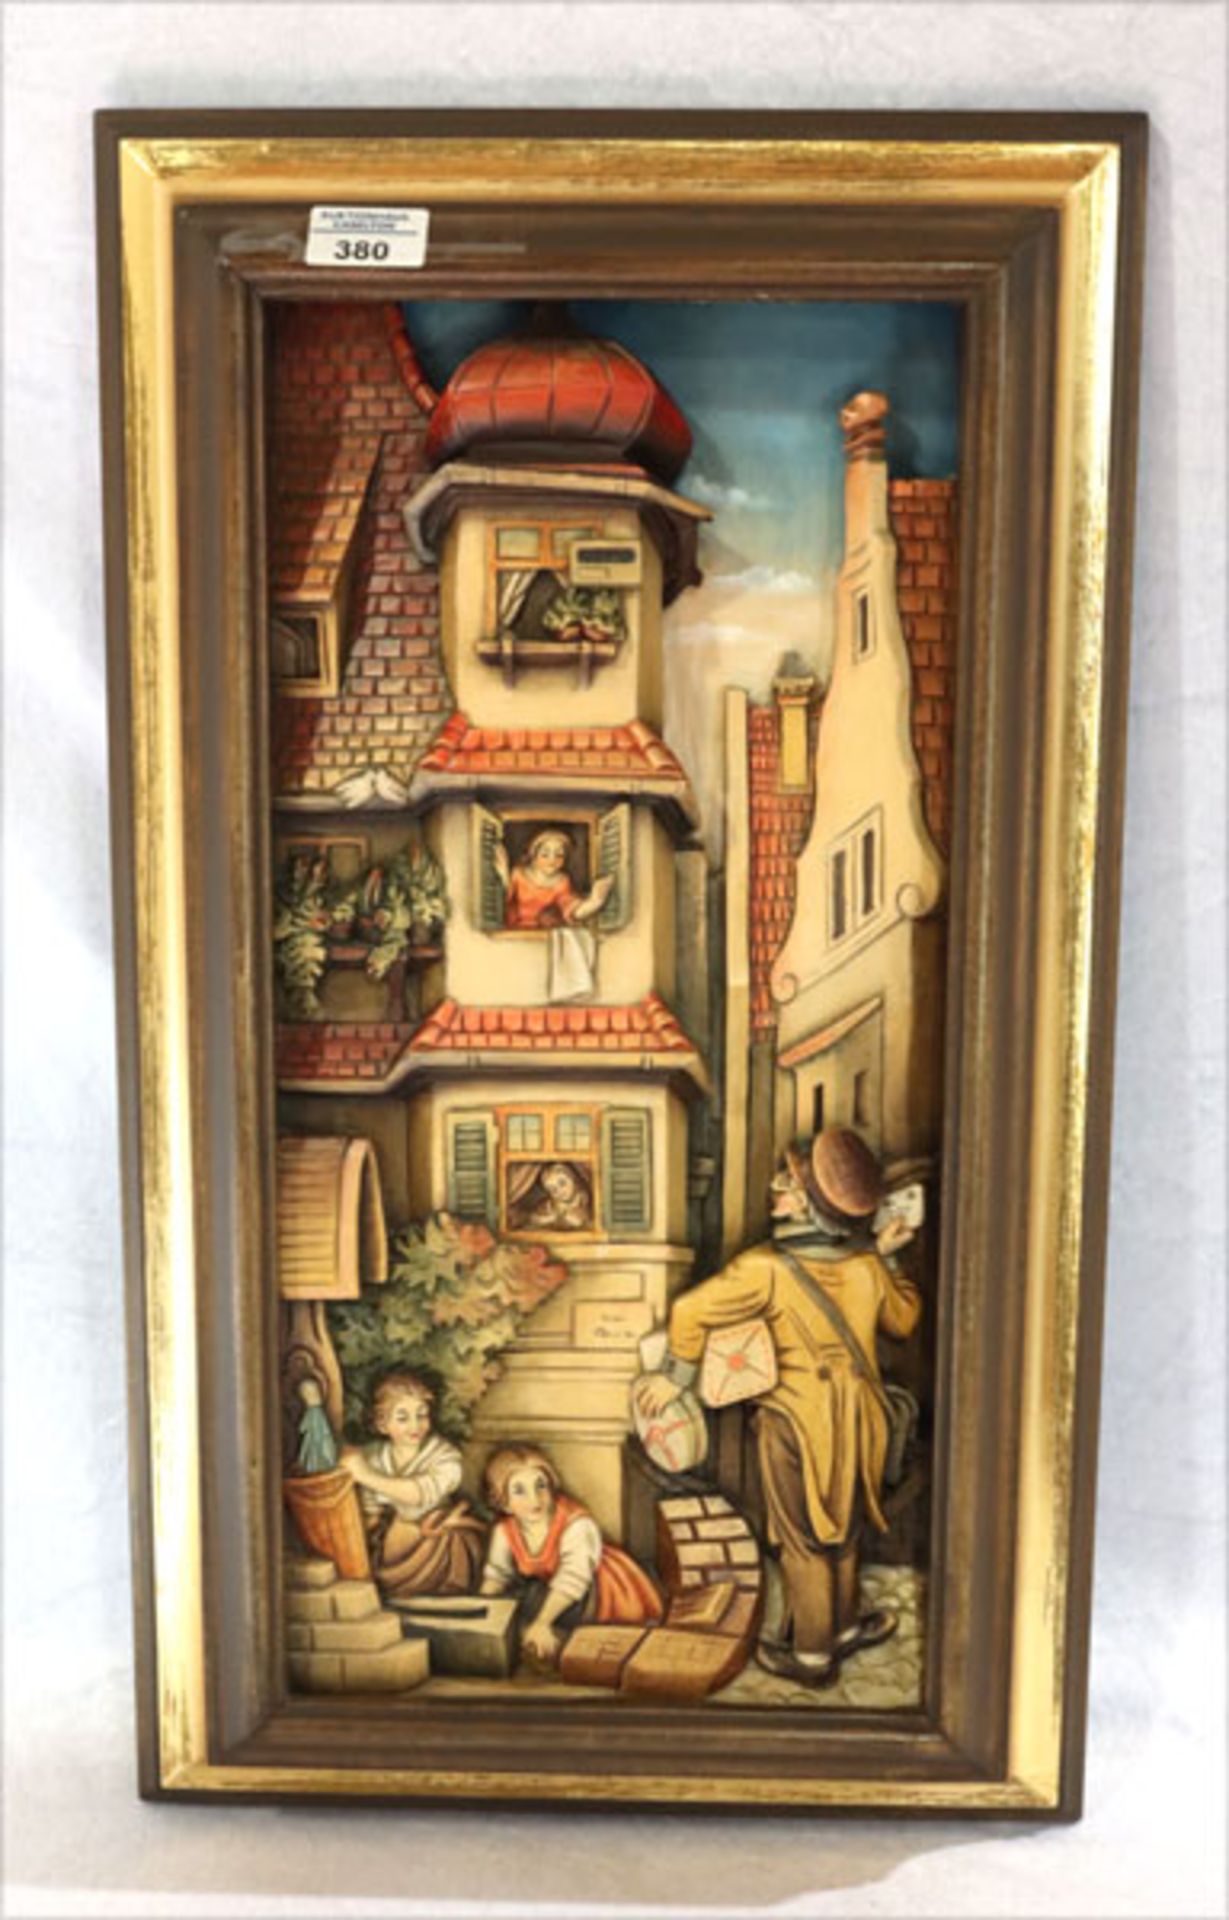 Holz Reliefbild nach einer Szenerie von Carl Spitzweg, farbig gefaßt, gerahmt, incl. Rahmen 61 cm